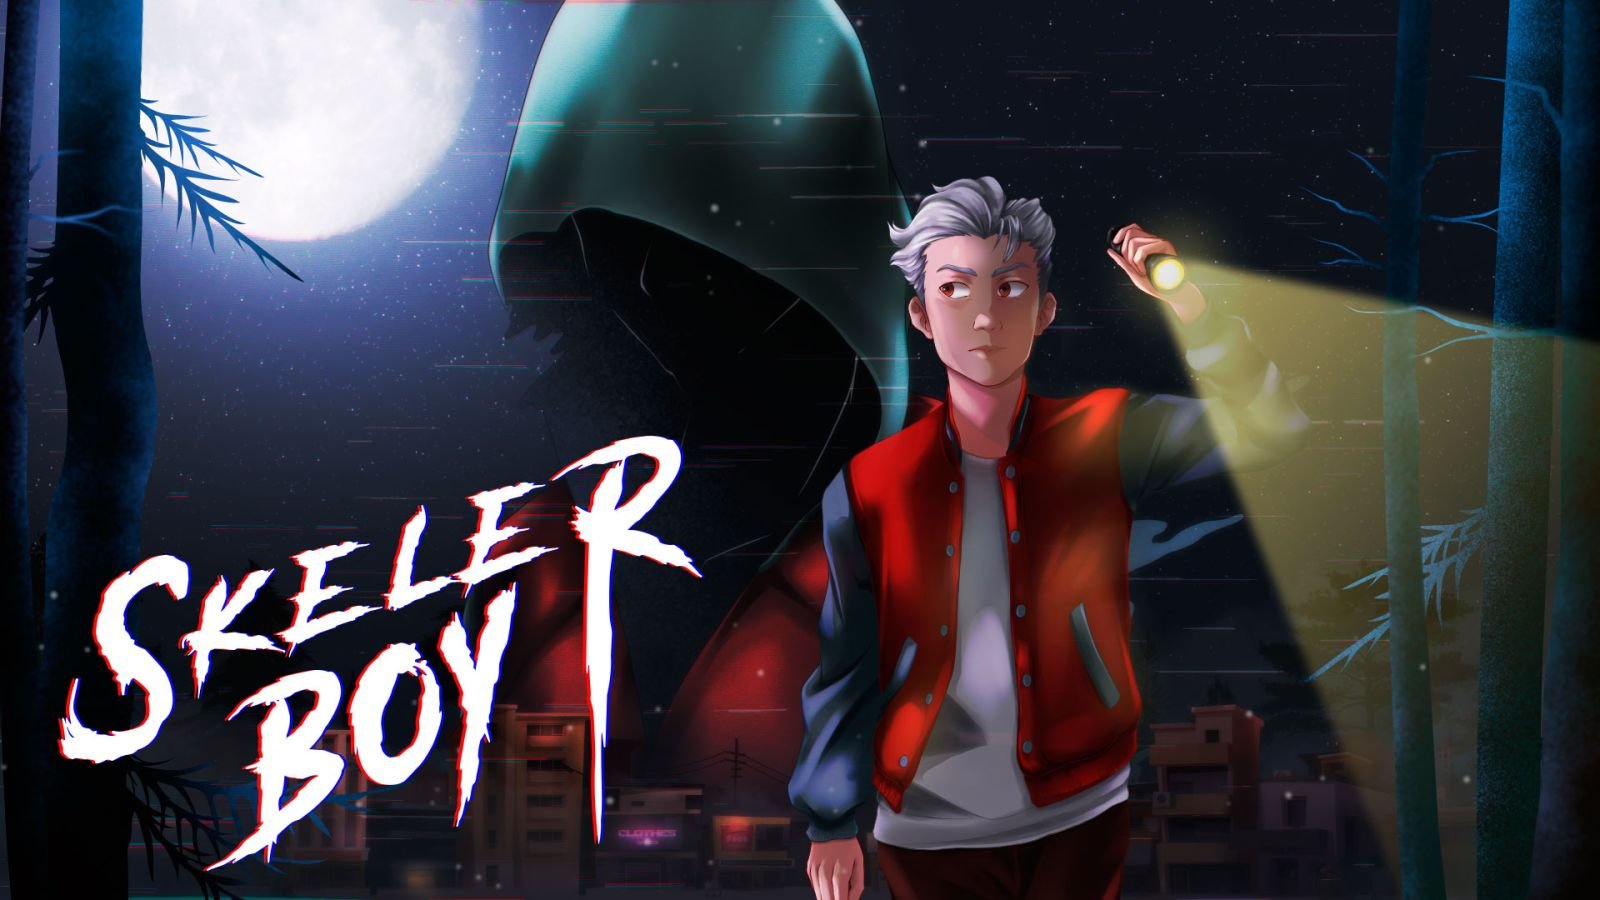 Skeler Boy : partez à la recherche de votre petite amie disparue dans ce jeu d’action-aventure disponible à la fin du mois